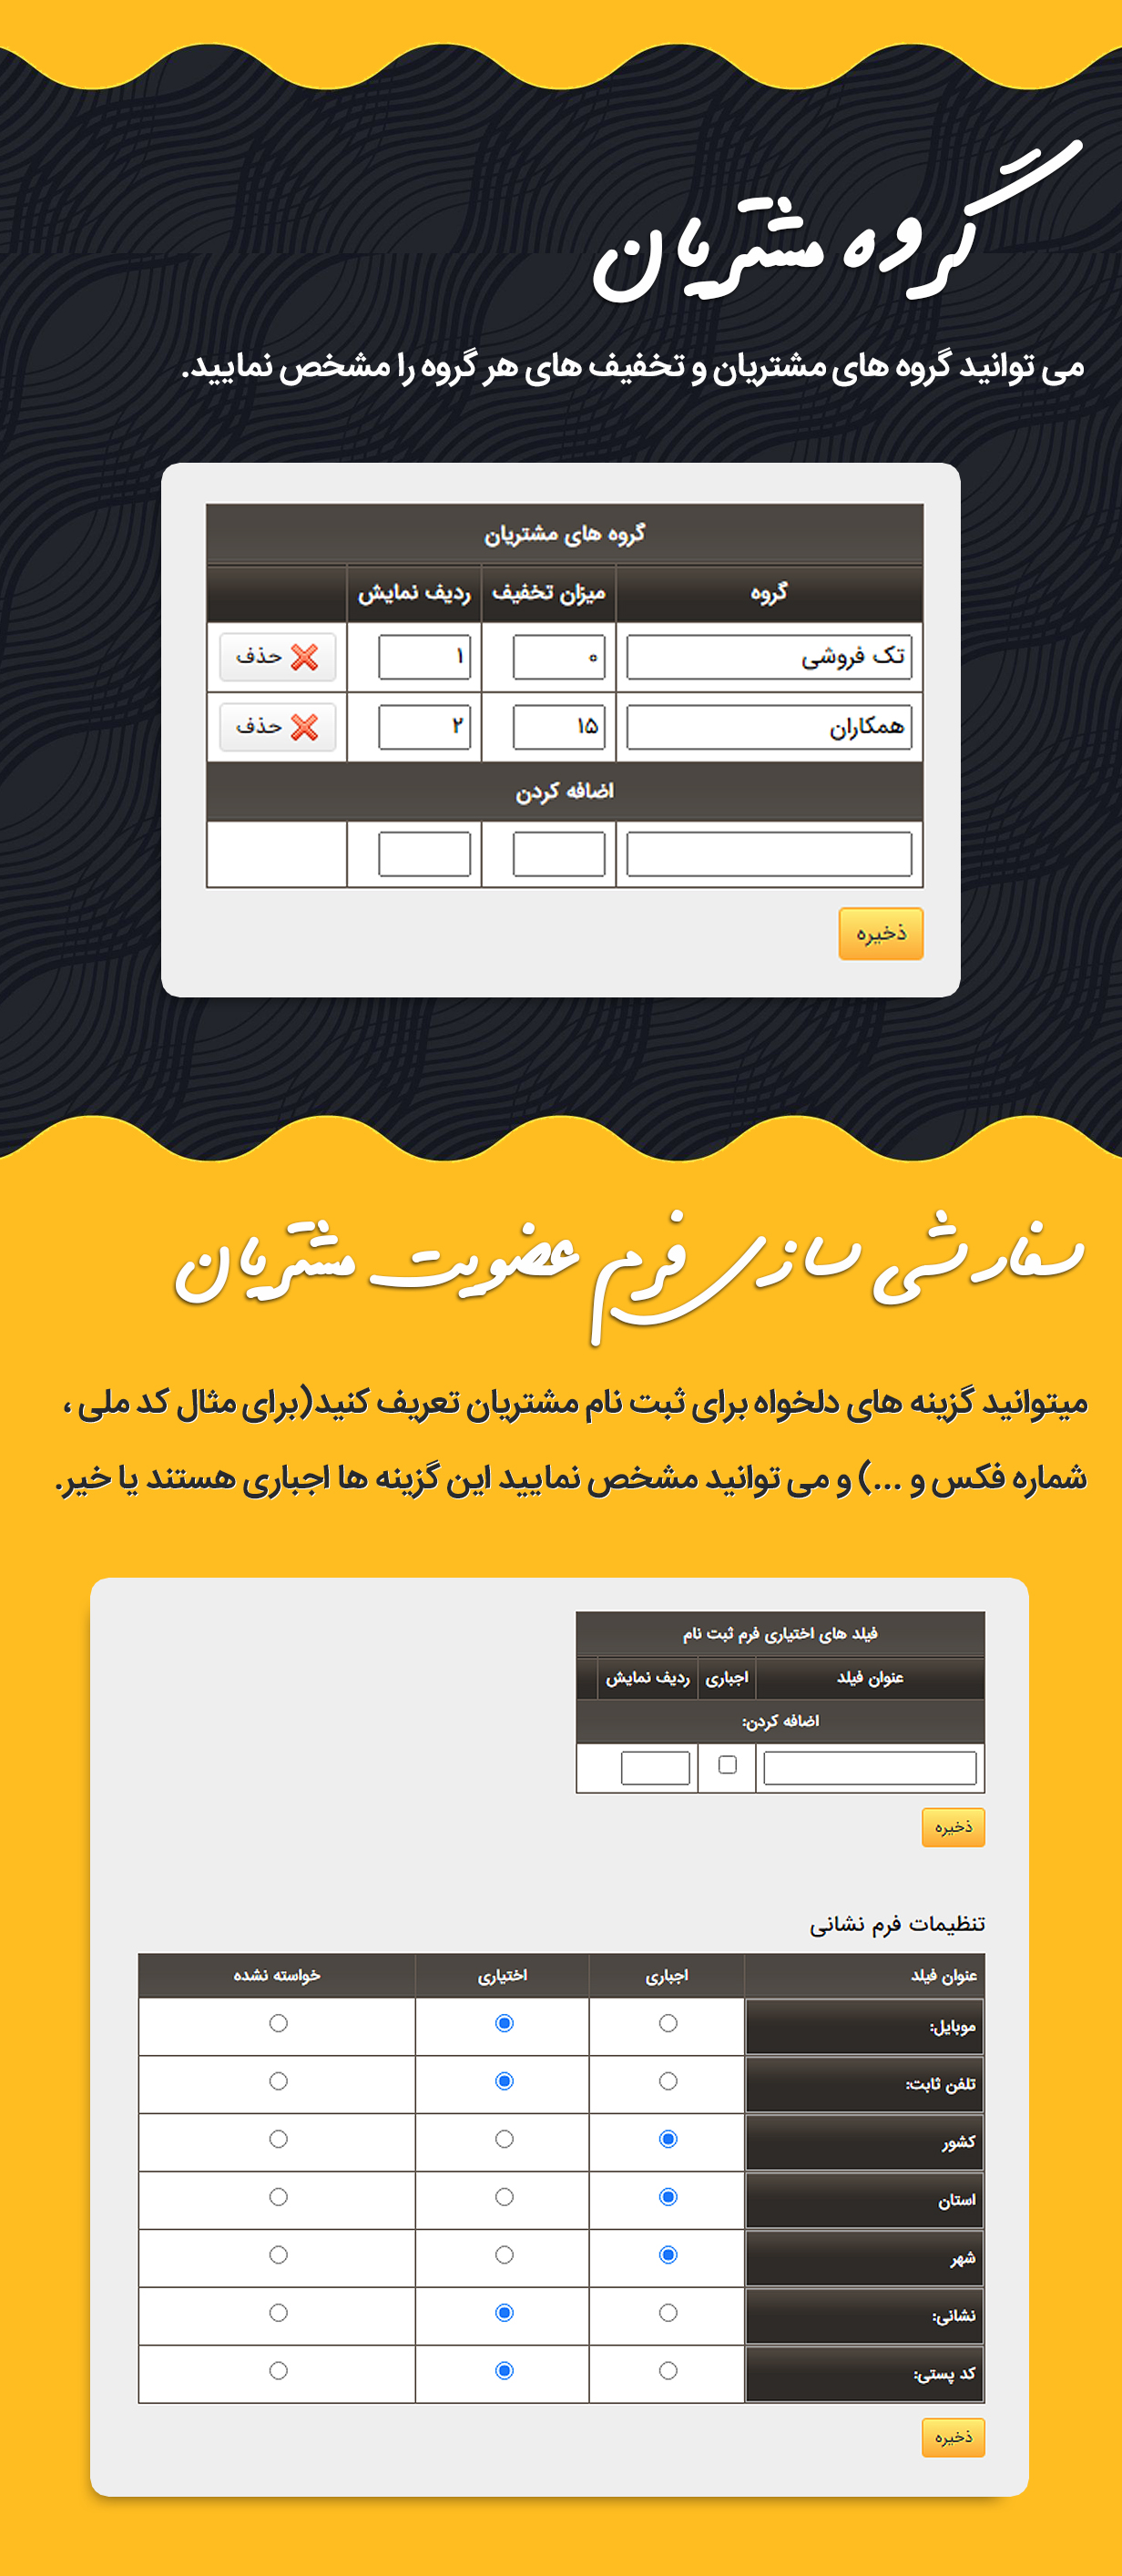 فروشندگان در اسکریپت فارسی GNIK